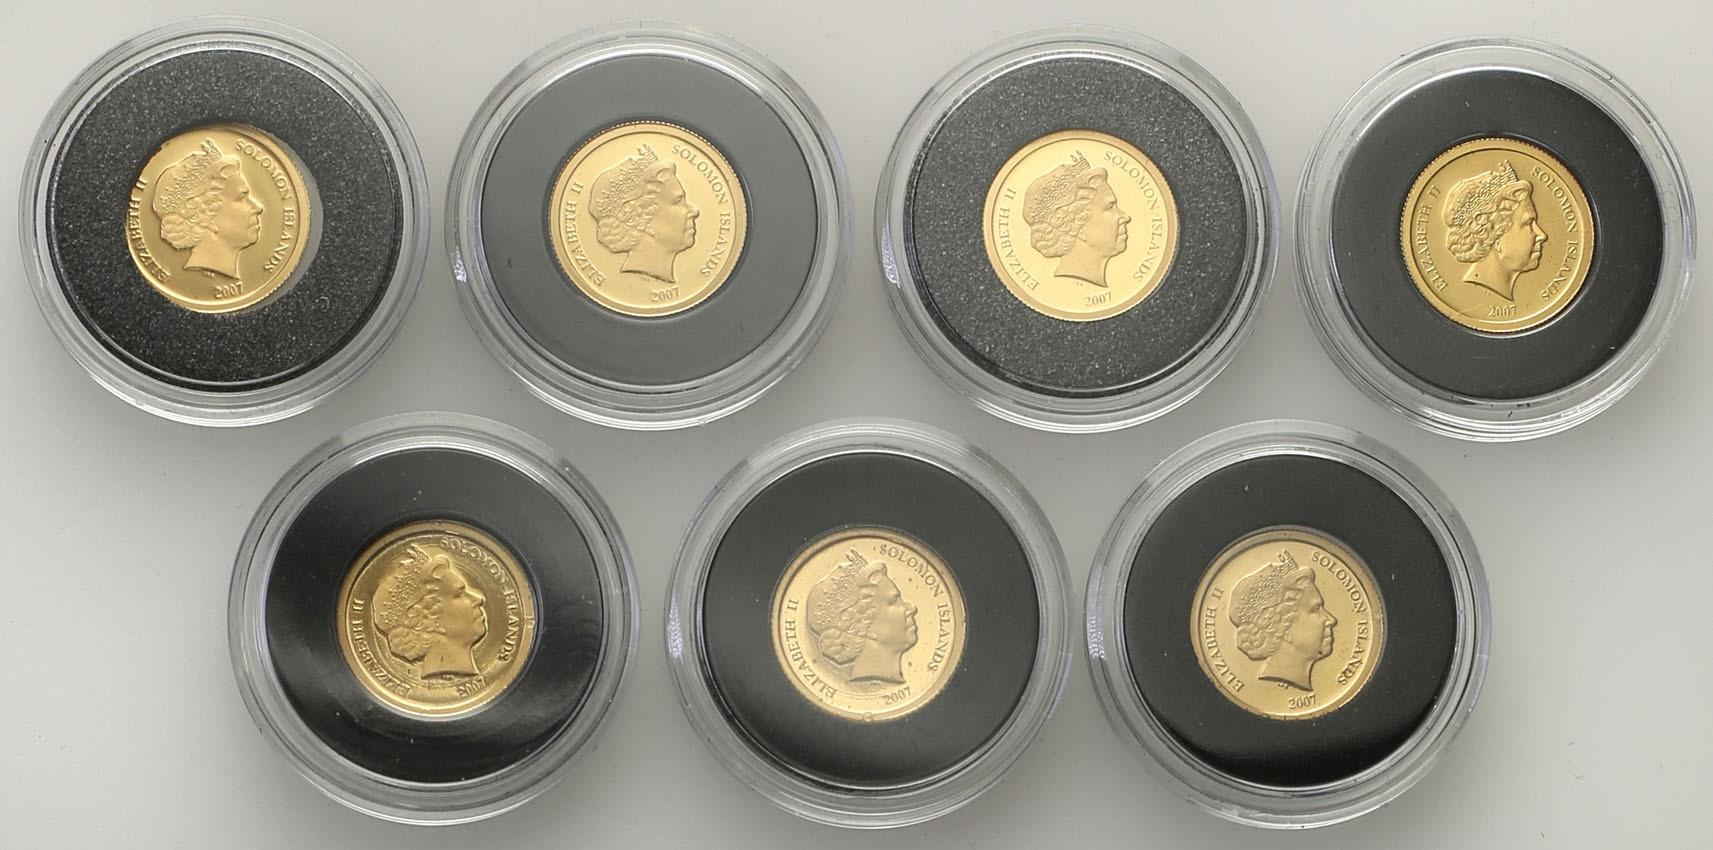 Świat najmniejsze monety złote 7 sztuk